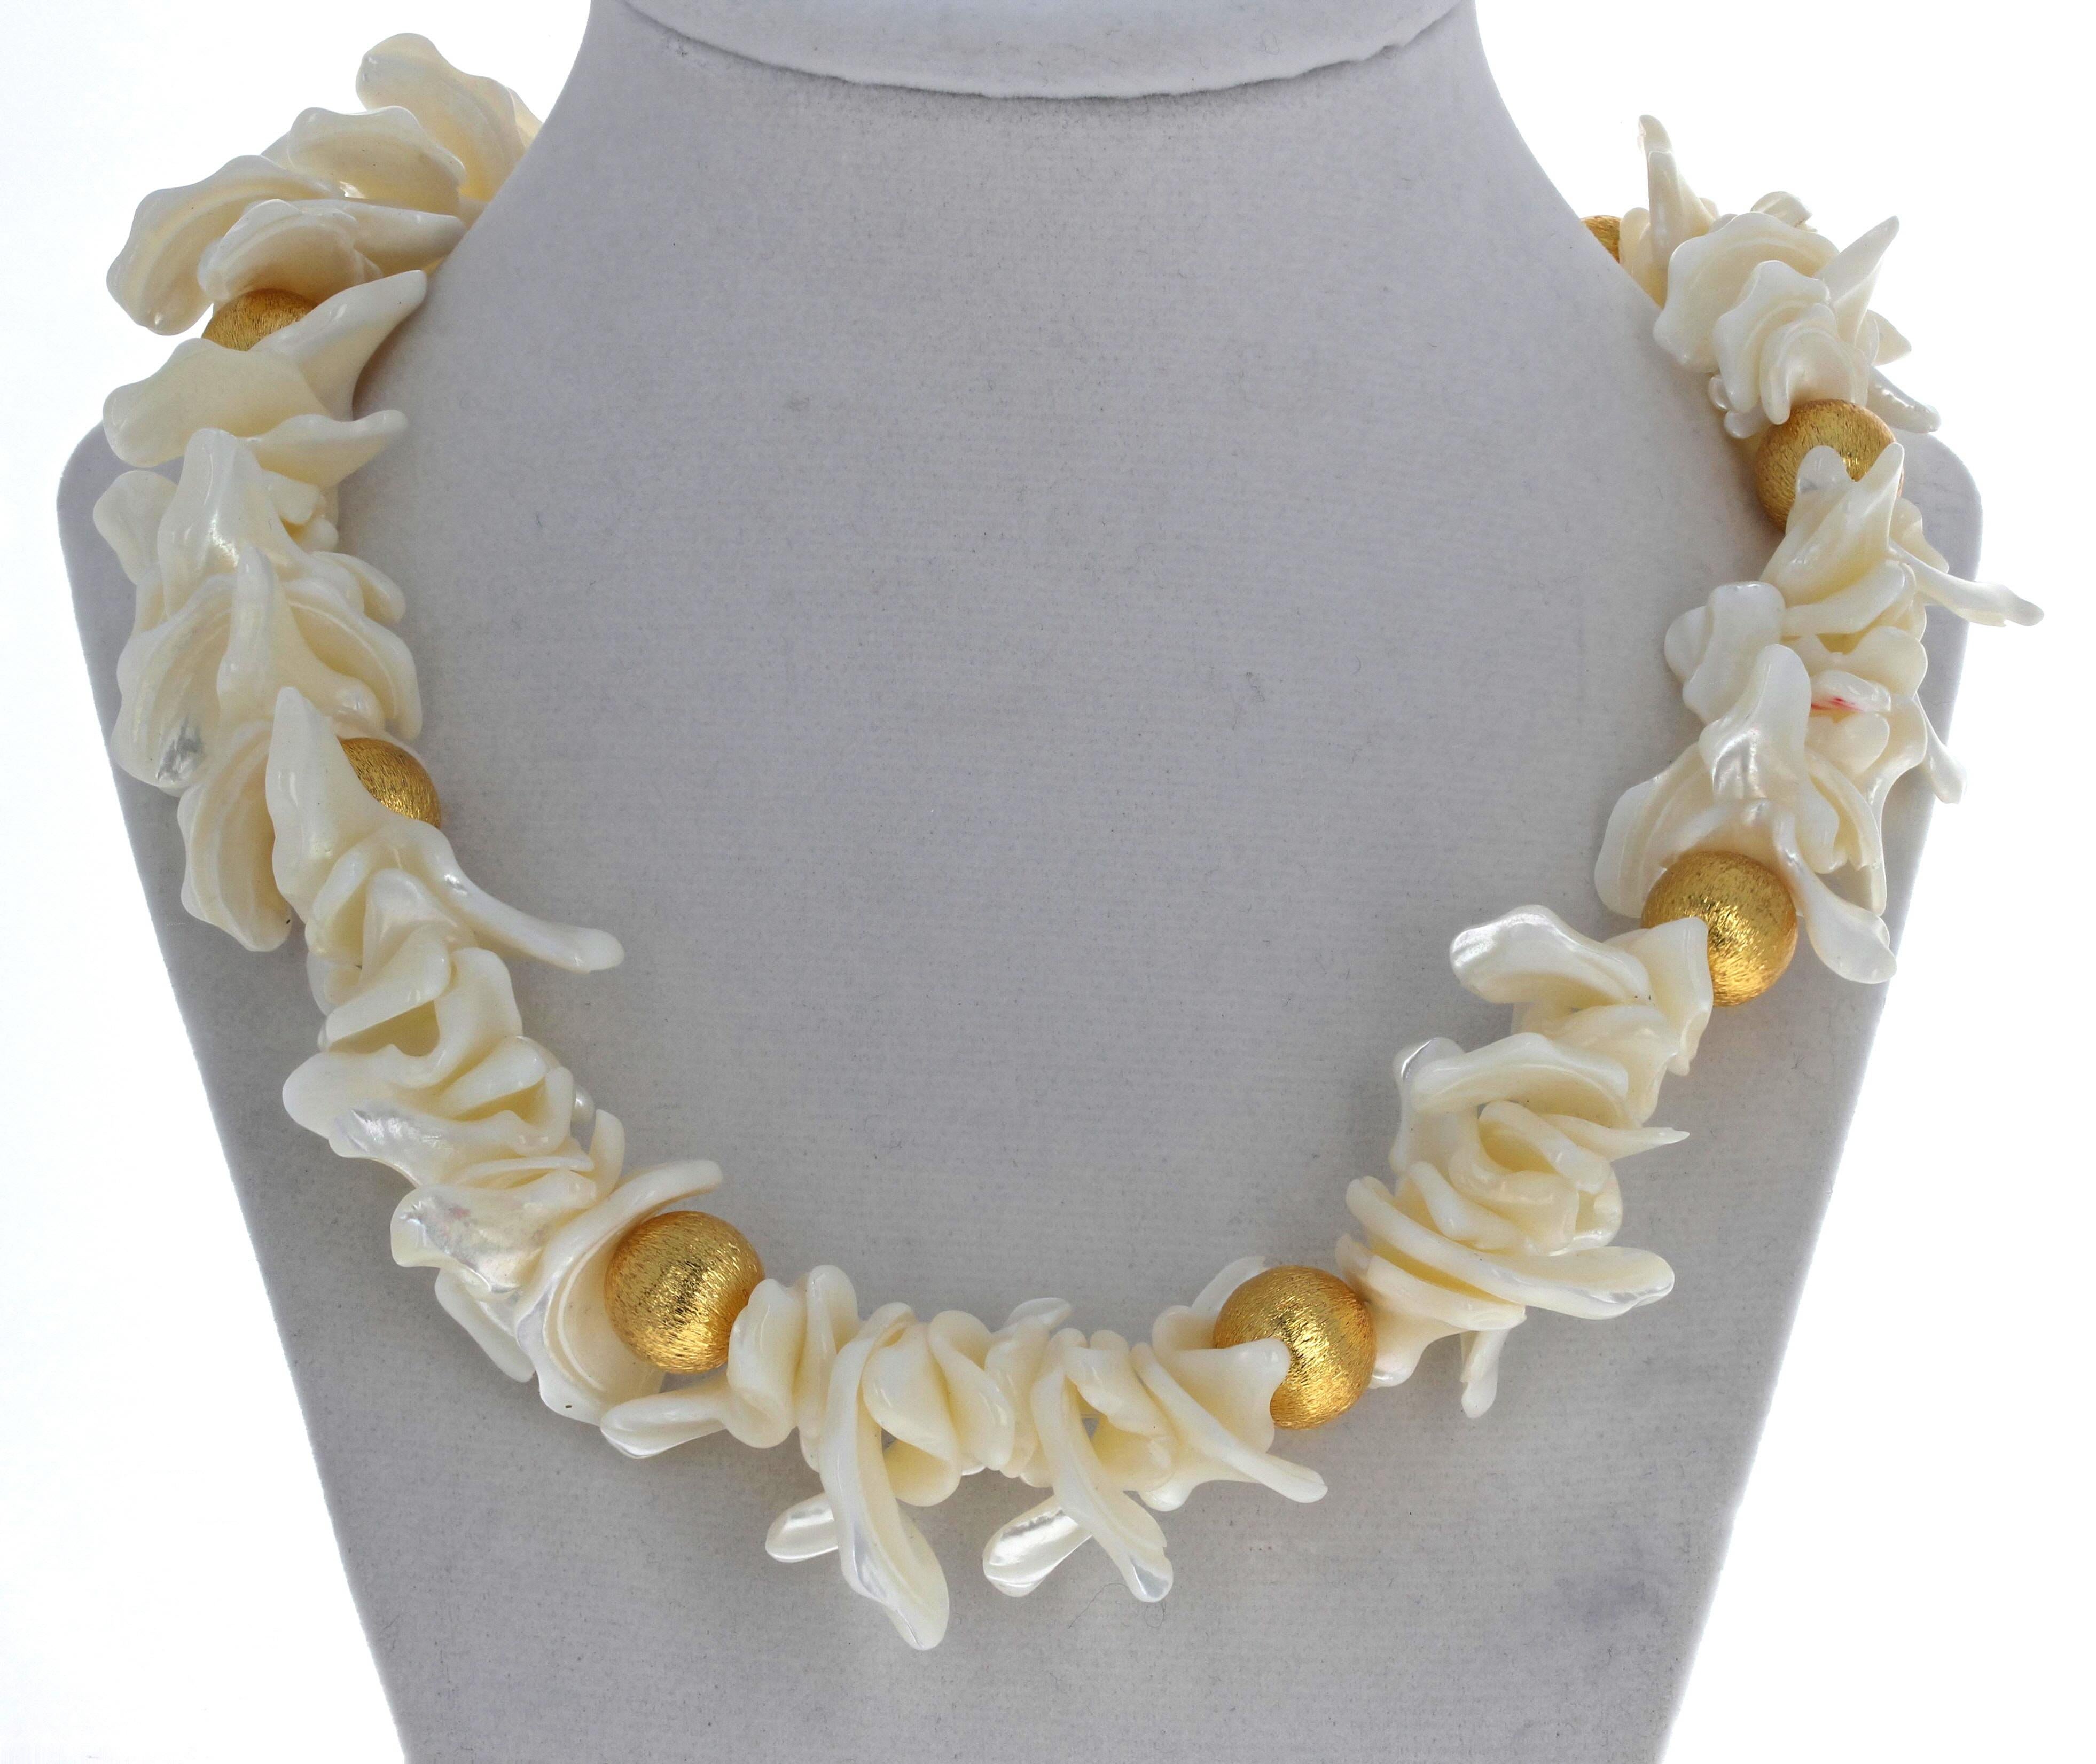 Diese prächtige 19 Zoll lange Halskette aus natürlichen weißen Flip-Flop-Perlen ist mit gelbvergoldeten Rondellen verziert.  Die längsten Perlen sind etwa 1 1/4 Zoll lang.  Die großen vergoldeten Rondelle sind 13 mm groß.  Der Verschluss ist ein